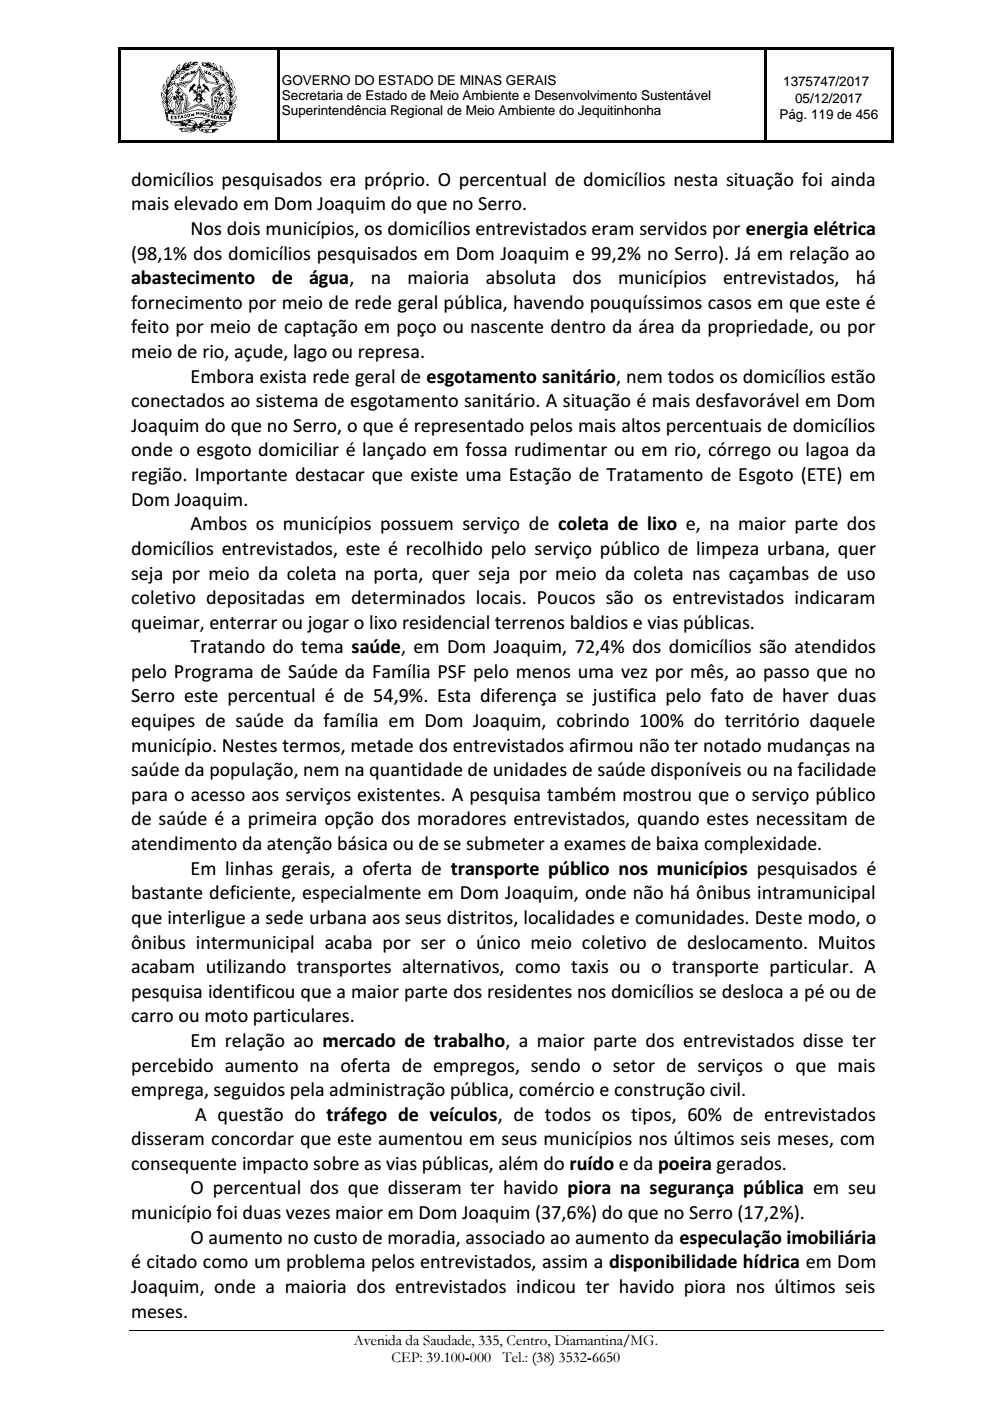 Page 119 from Parecer único da Secretaria de estado de Meio Ambiente e Desenvolvimento Sustentável (SEMAD)